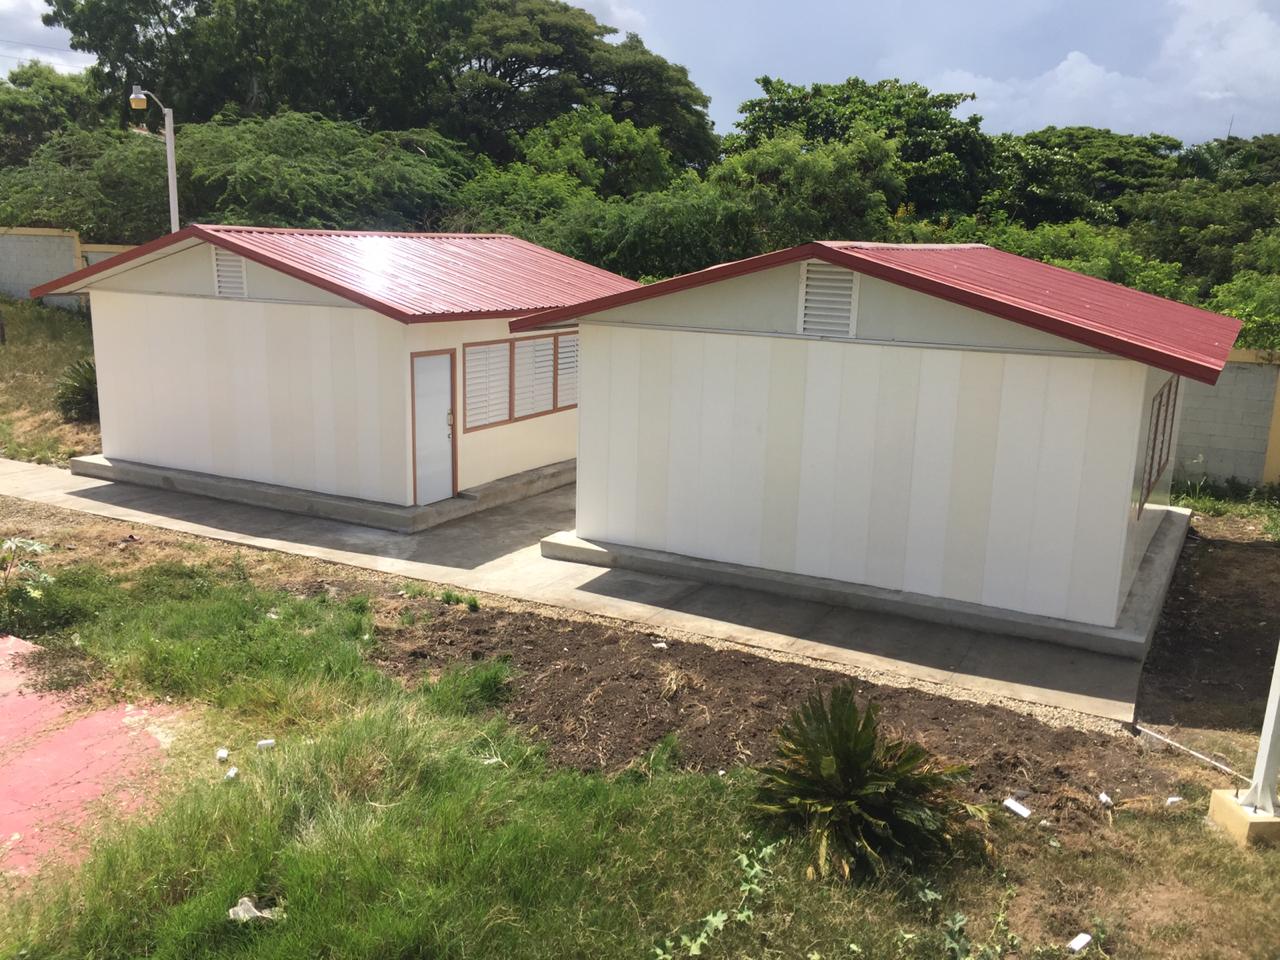 Ministro de Educación dispone alquiler de viviendas en lugares cercanos a escuelas con mayores dificultades de mantenimiento